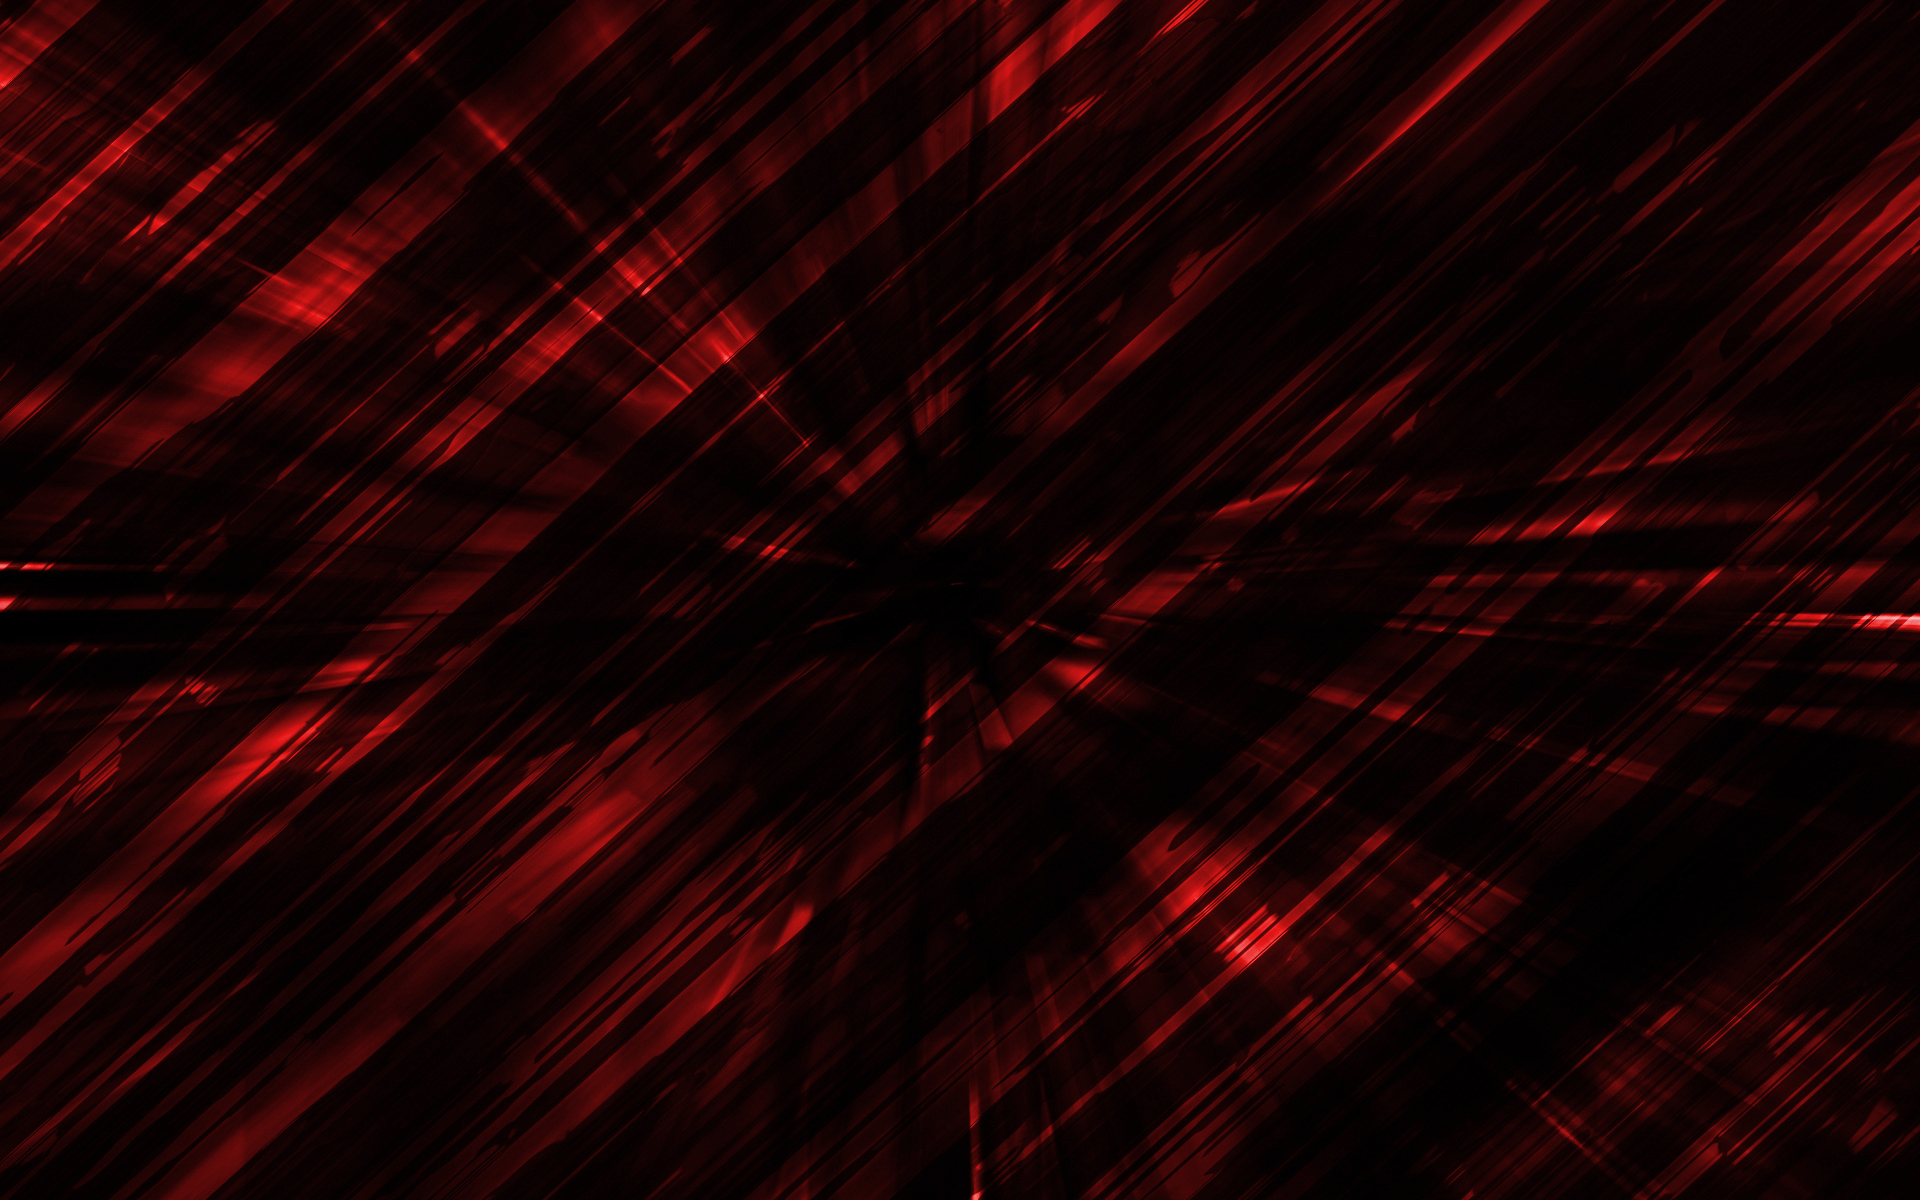 Red HD Wallpapers 1080p - WallpaperSafari